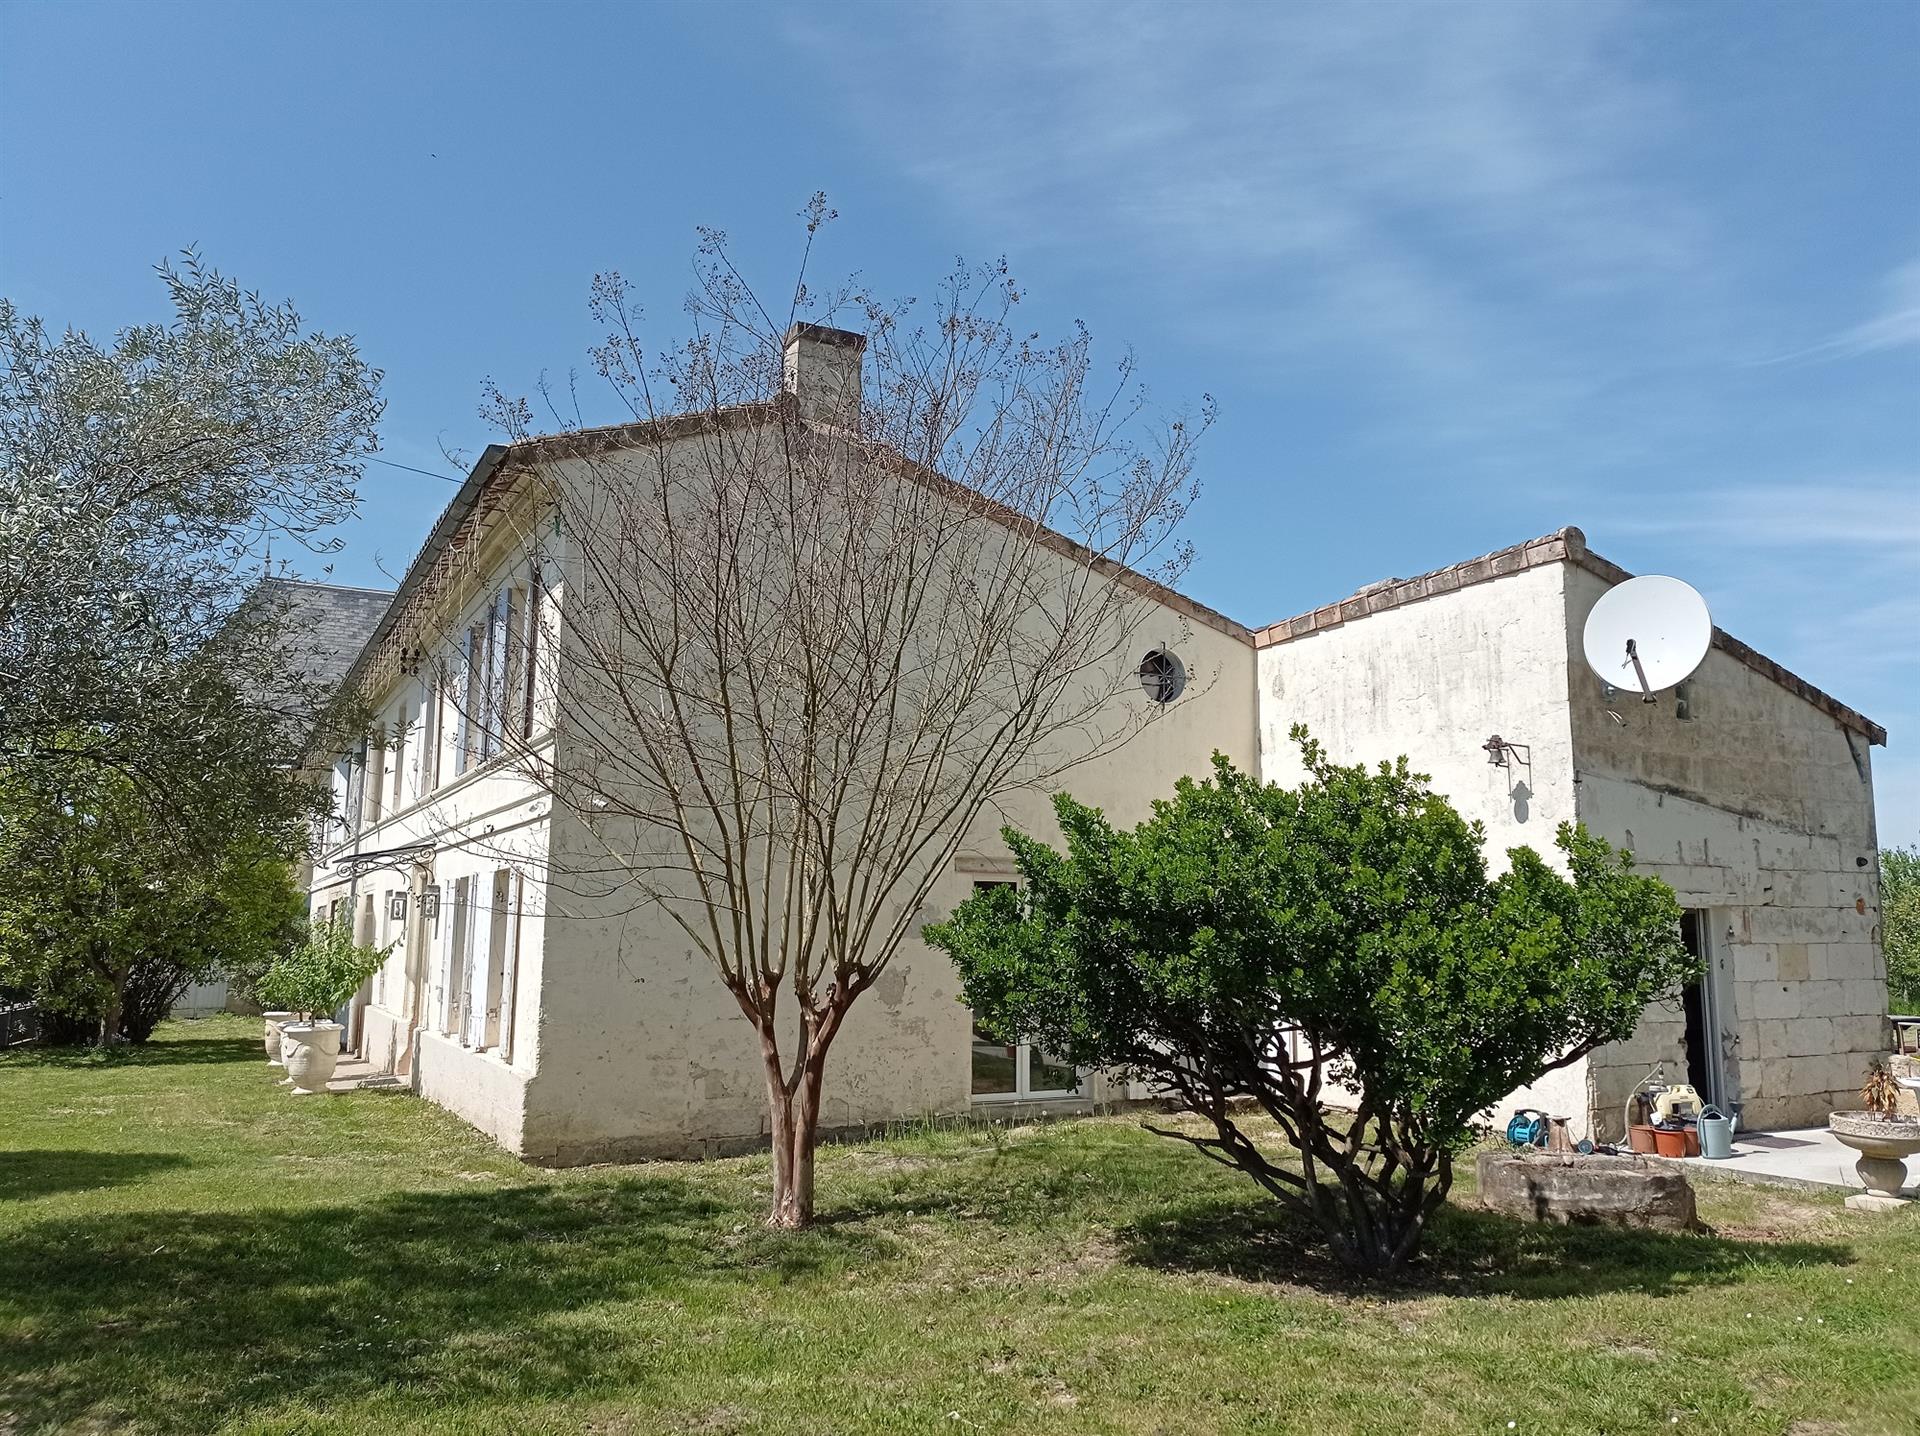 Una rara oportunidad de comprar una gran casa de campo de piedra en Saint-André-de-Cubzac, a 20 km 